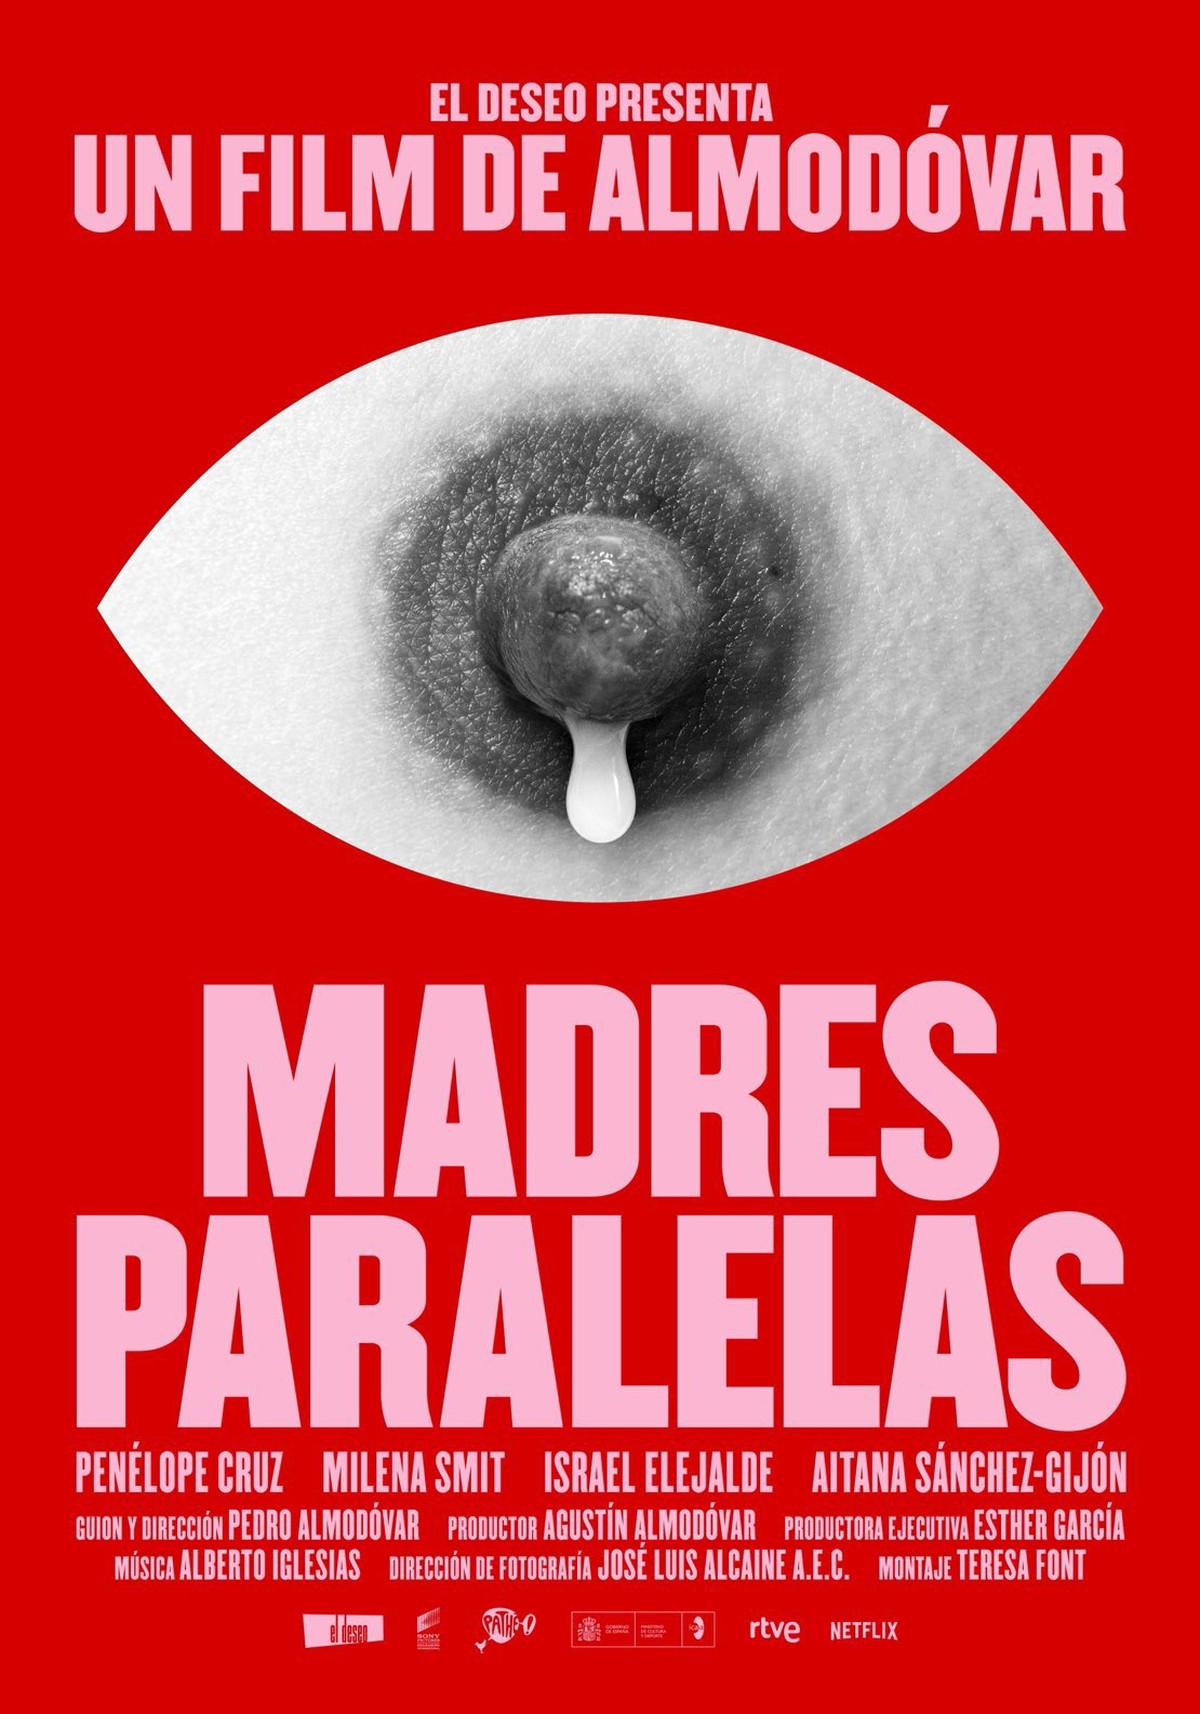 Instagram tira cartaz do novo filme de Pedro Almodóvar do ar por conter imagem de mamilo | Cinema